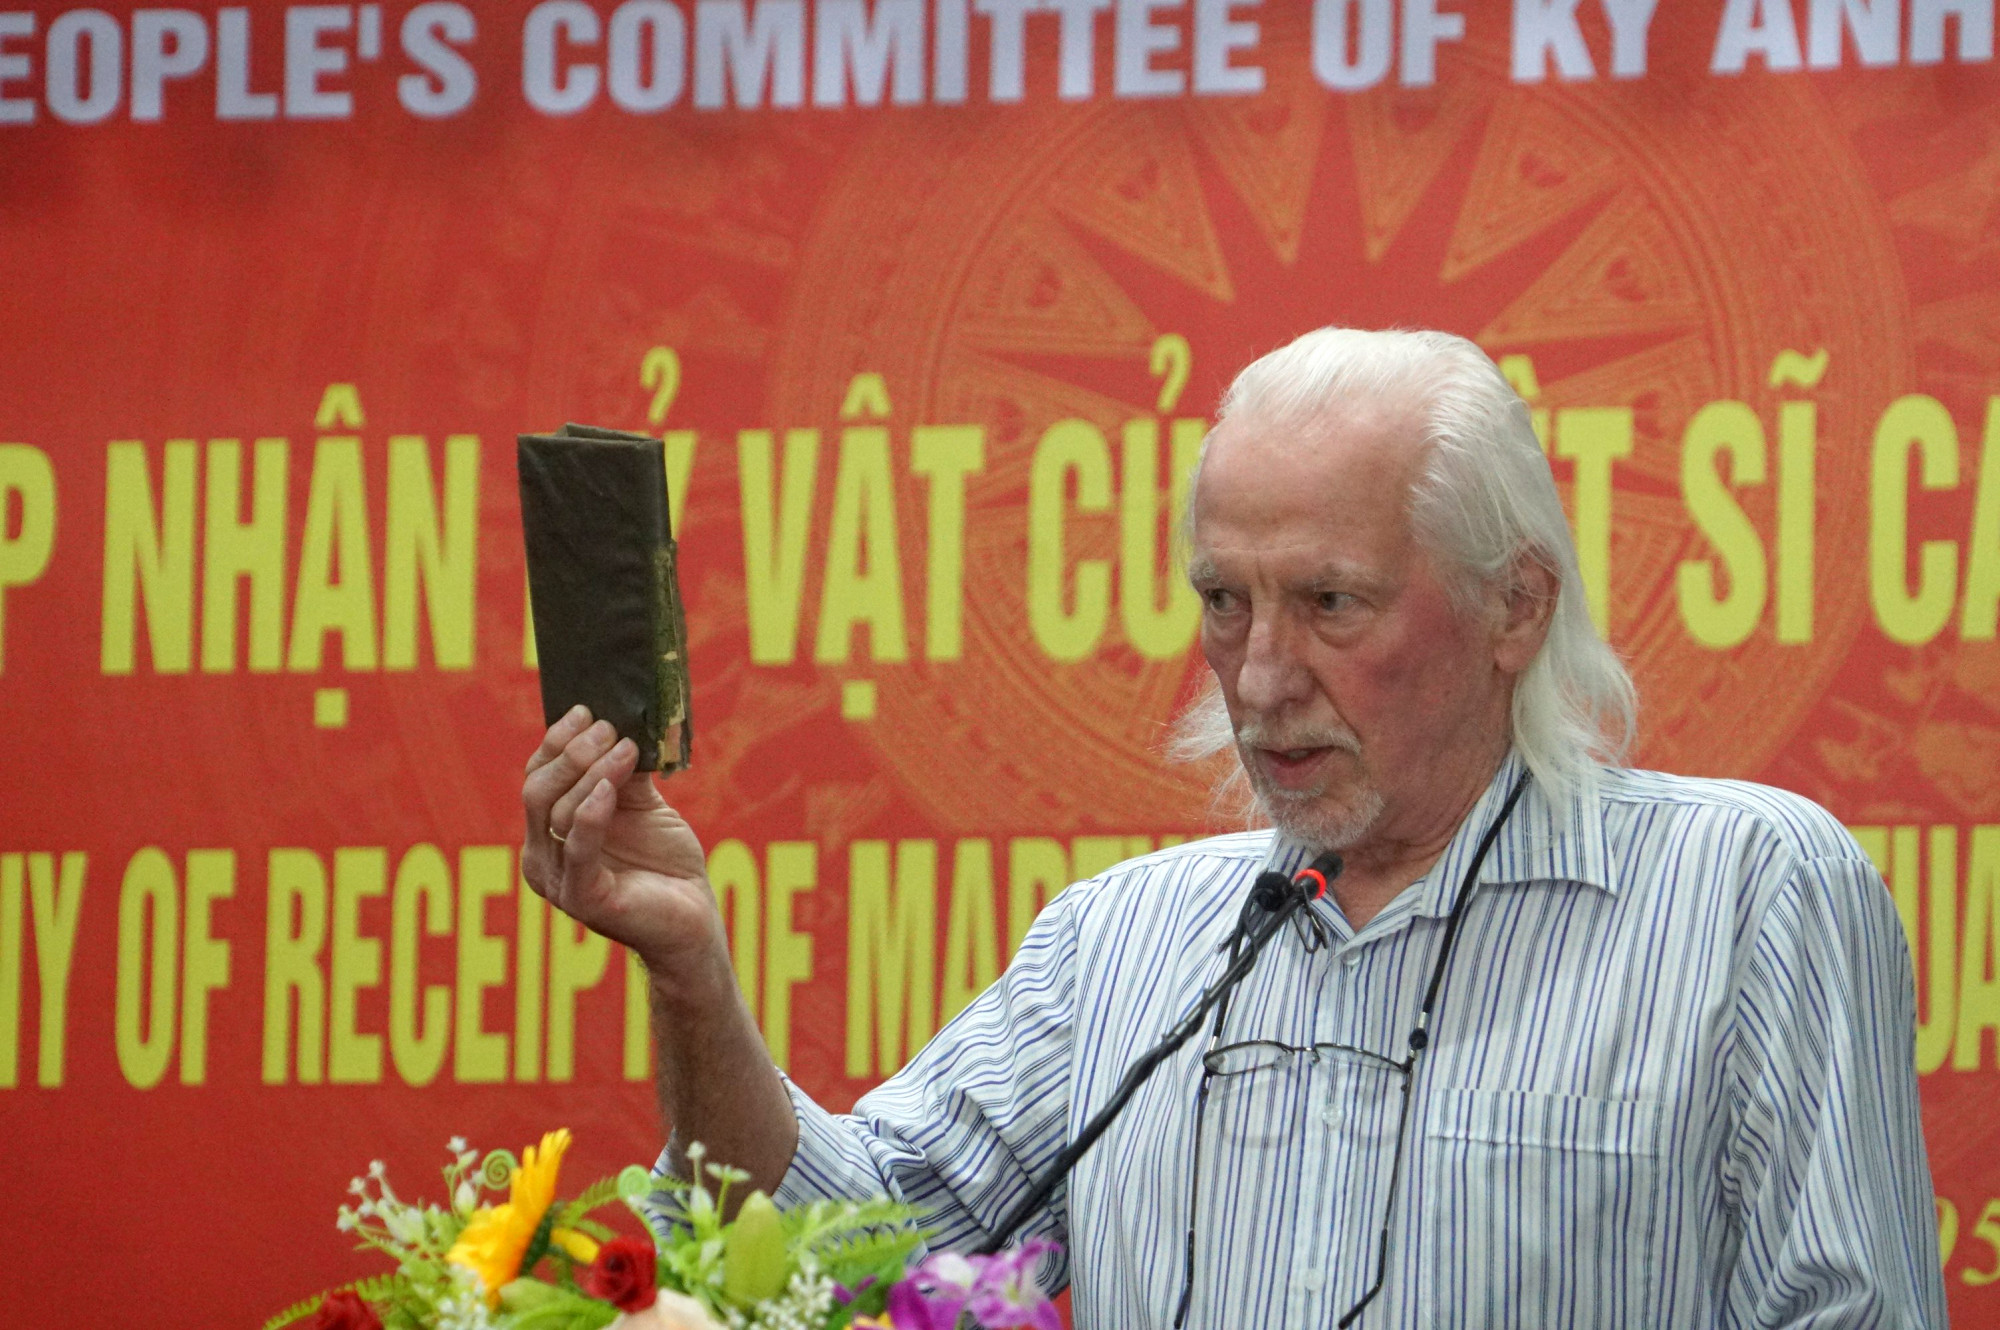 Sau hơn nửa thế kỉ lưu giữ, ông Peter Mathews đã trực tiếp quay lại Việt Nam bàn giao cuốn nhật ký - Ảnh: Khánh Trung